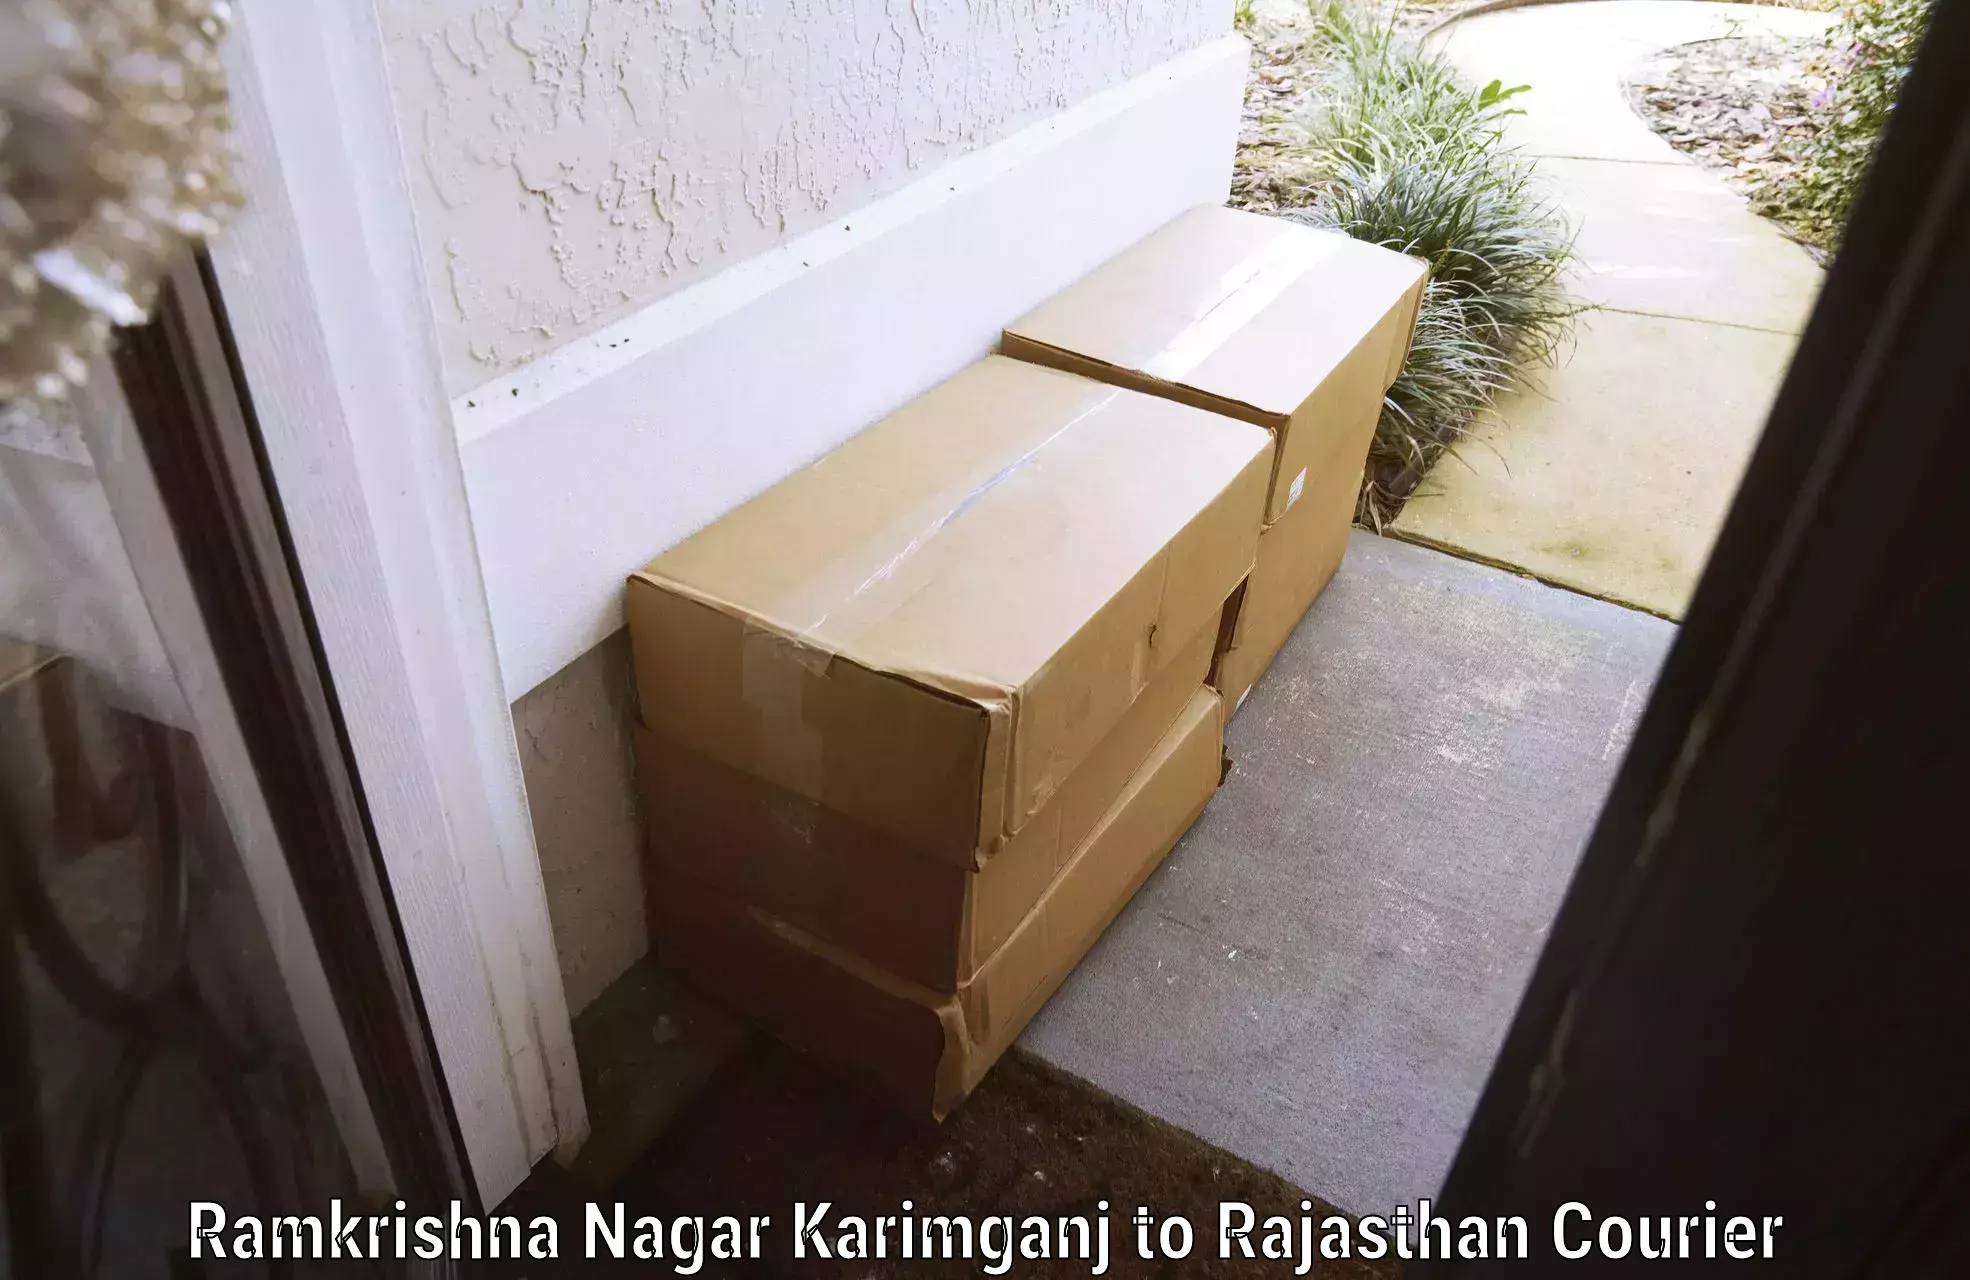 Baggage shipping schedule in Ramkrishna Nagar Karimganj to Rajasthan